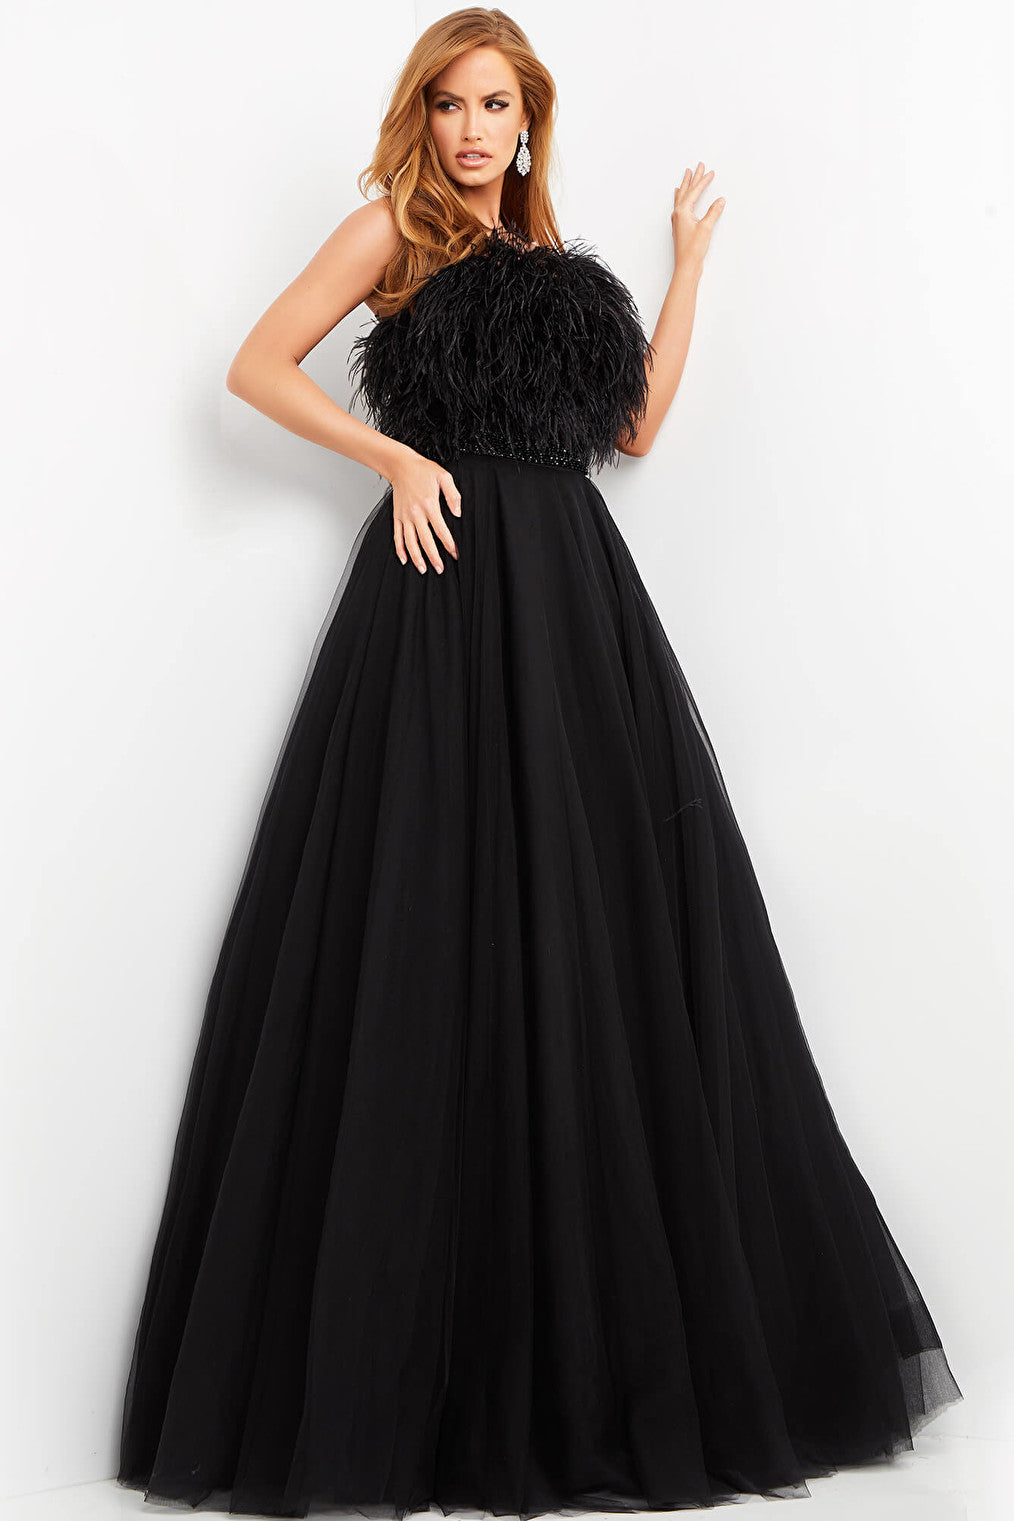 Jovani 05624 Black strapless evening ballgown